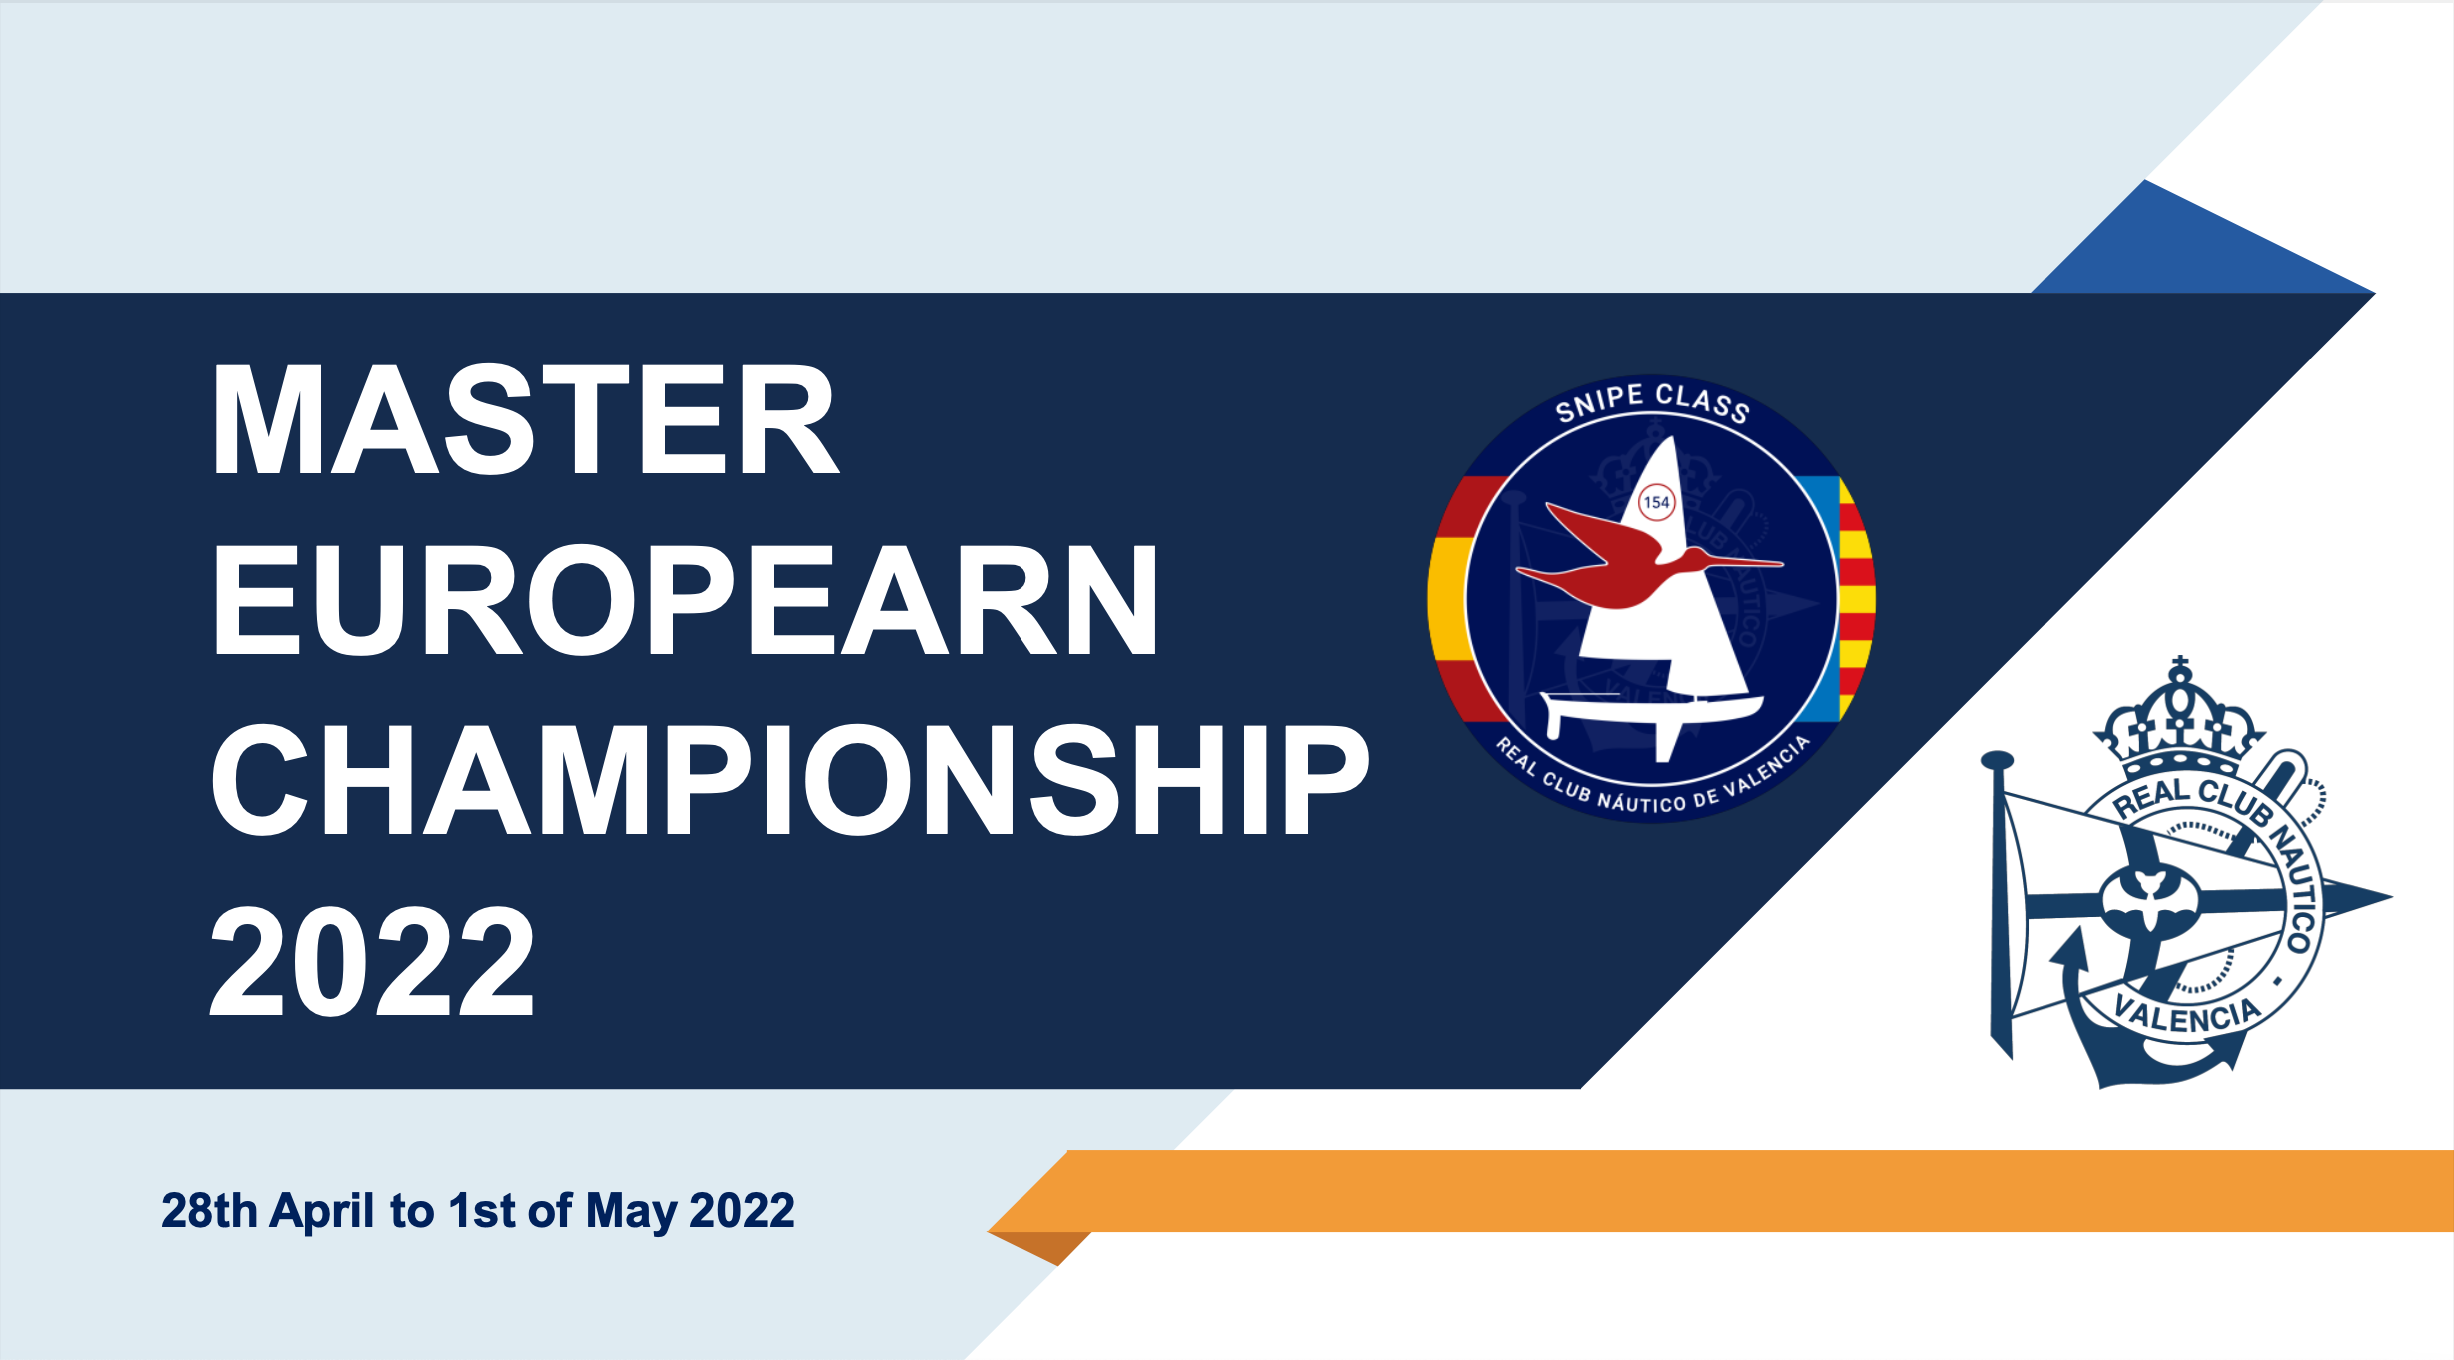 2022 Master European Championship Image